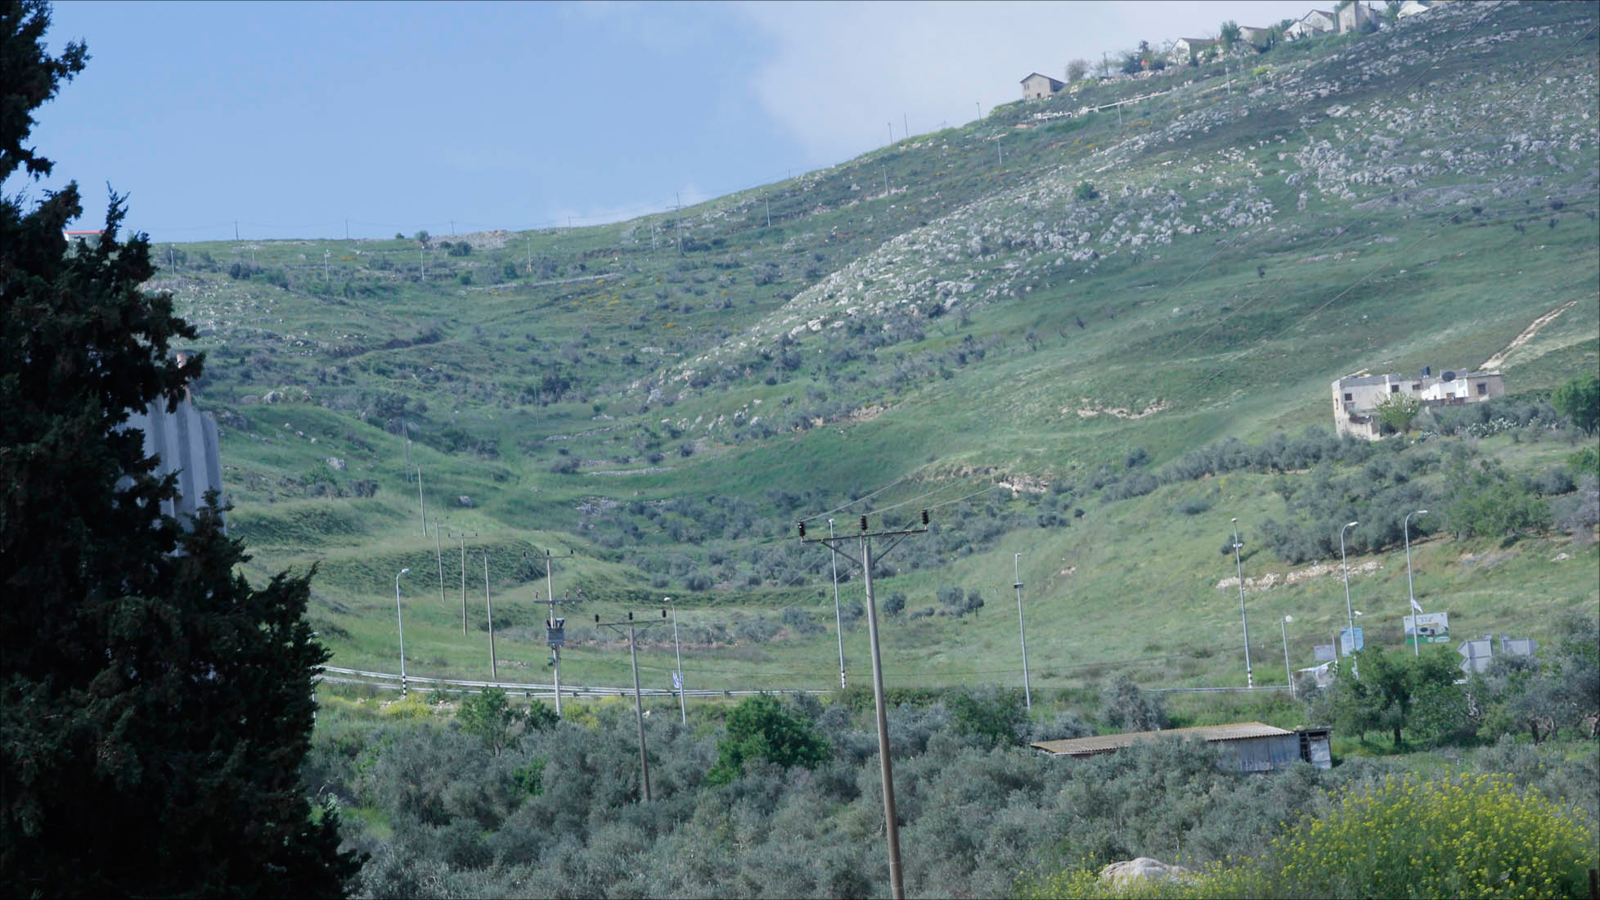 المستوطنون من مستوطنة يتسهار هاجموا الفلسطينيين في حوارة والقرى المجاورة من منازلهم بأعلى الجبل (الجزيرة)